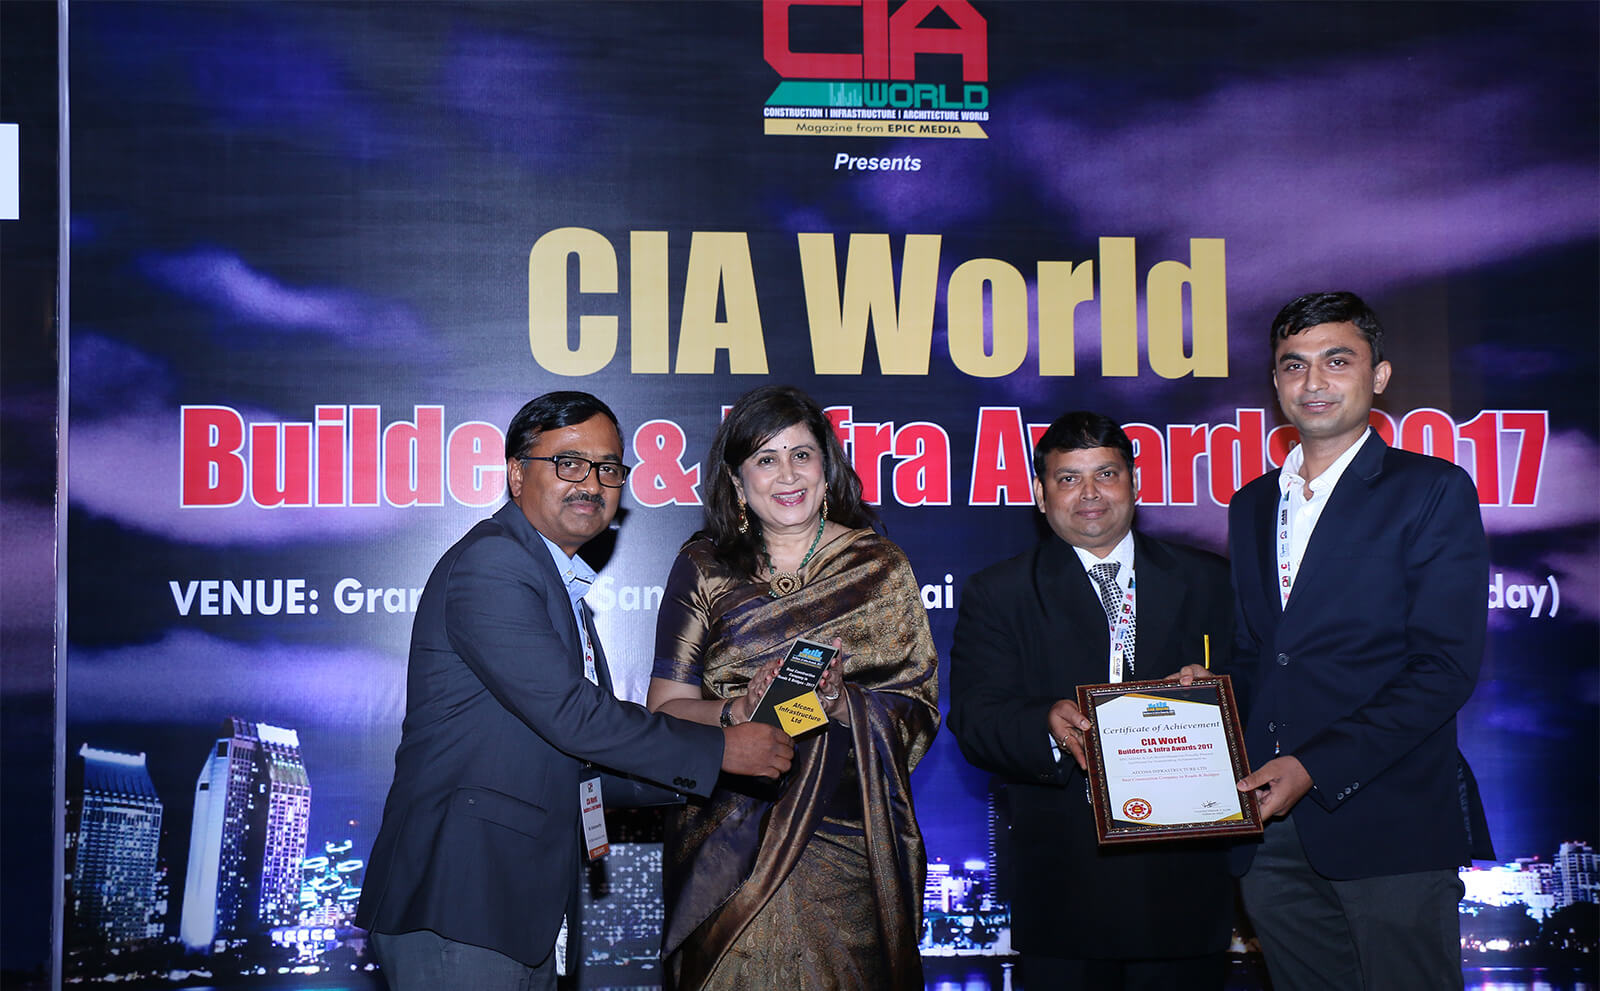 CIA World Builders &amp; Infra Awards 2017